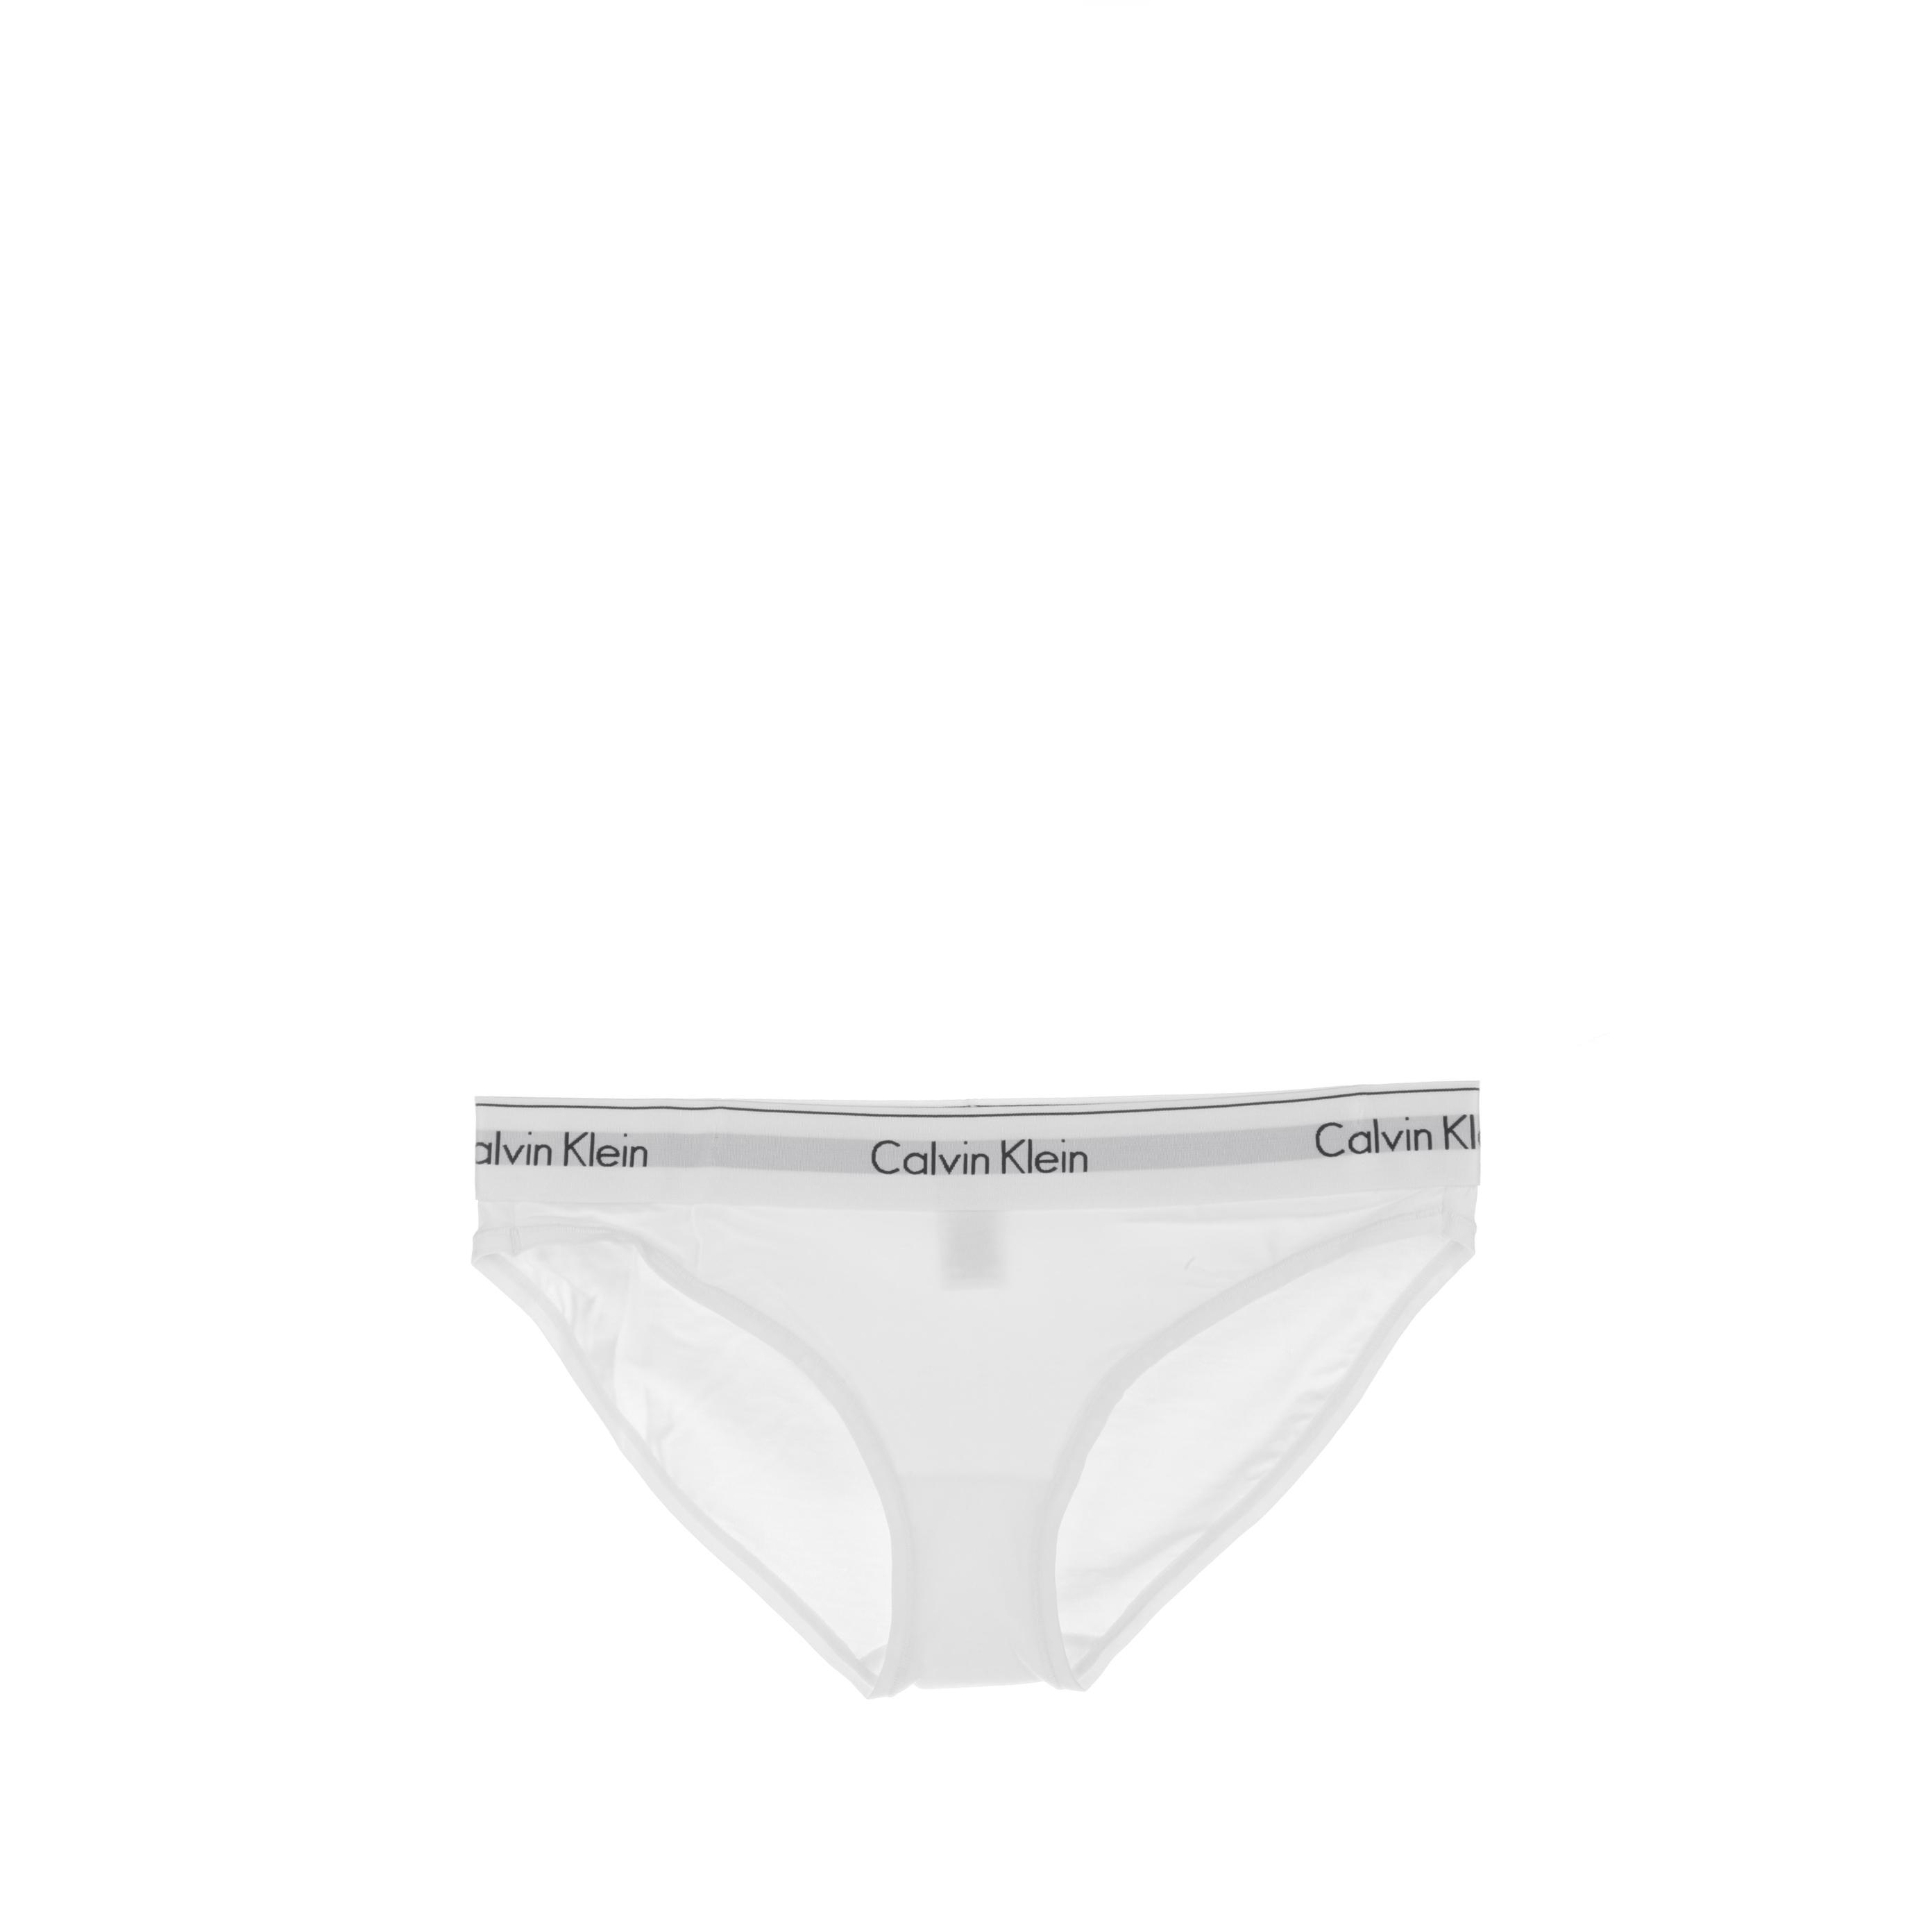 Calvin Klein - Bragas Estilo Bikini de Colección Calvin Klein con Logo y borde fino / F3787E